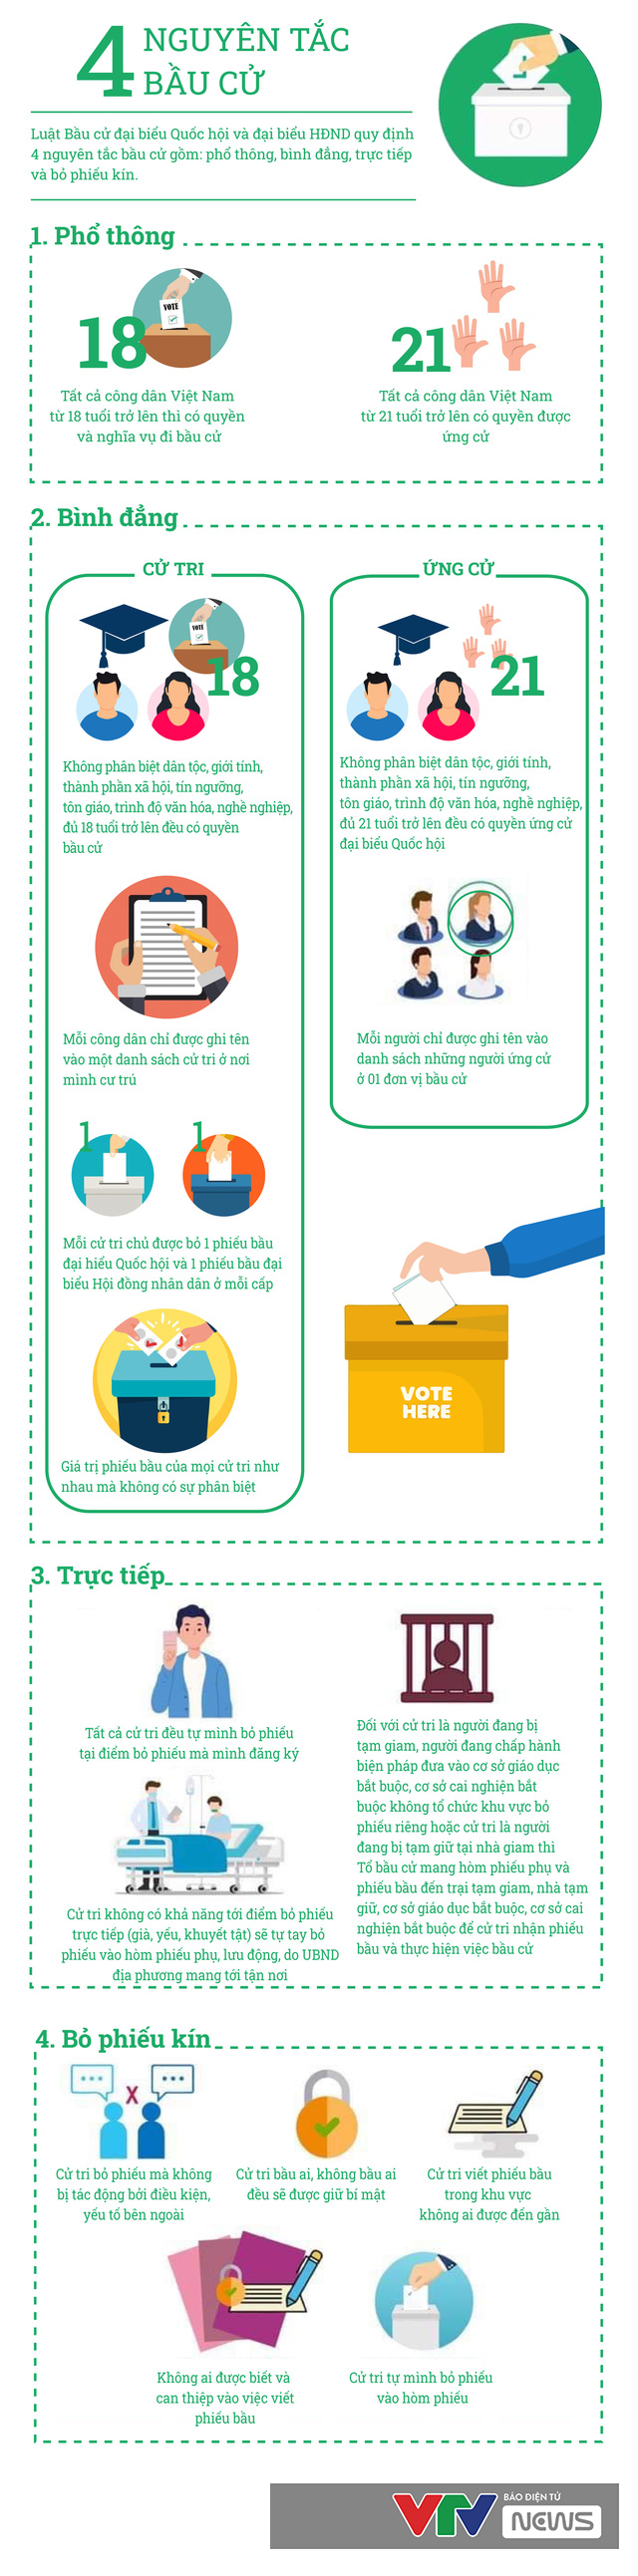 [Infographic] 4 nguyên tắc bầu cử đại biểu Quốc hội, đại biểu Hội đồng nhân dân - Ảnh 1.